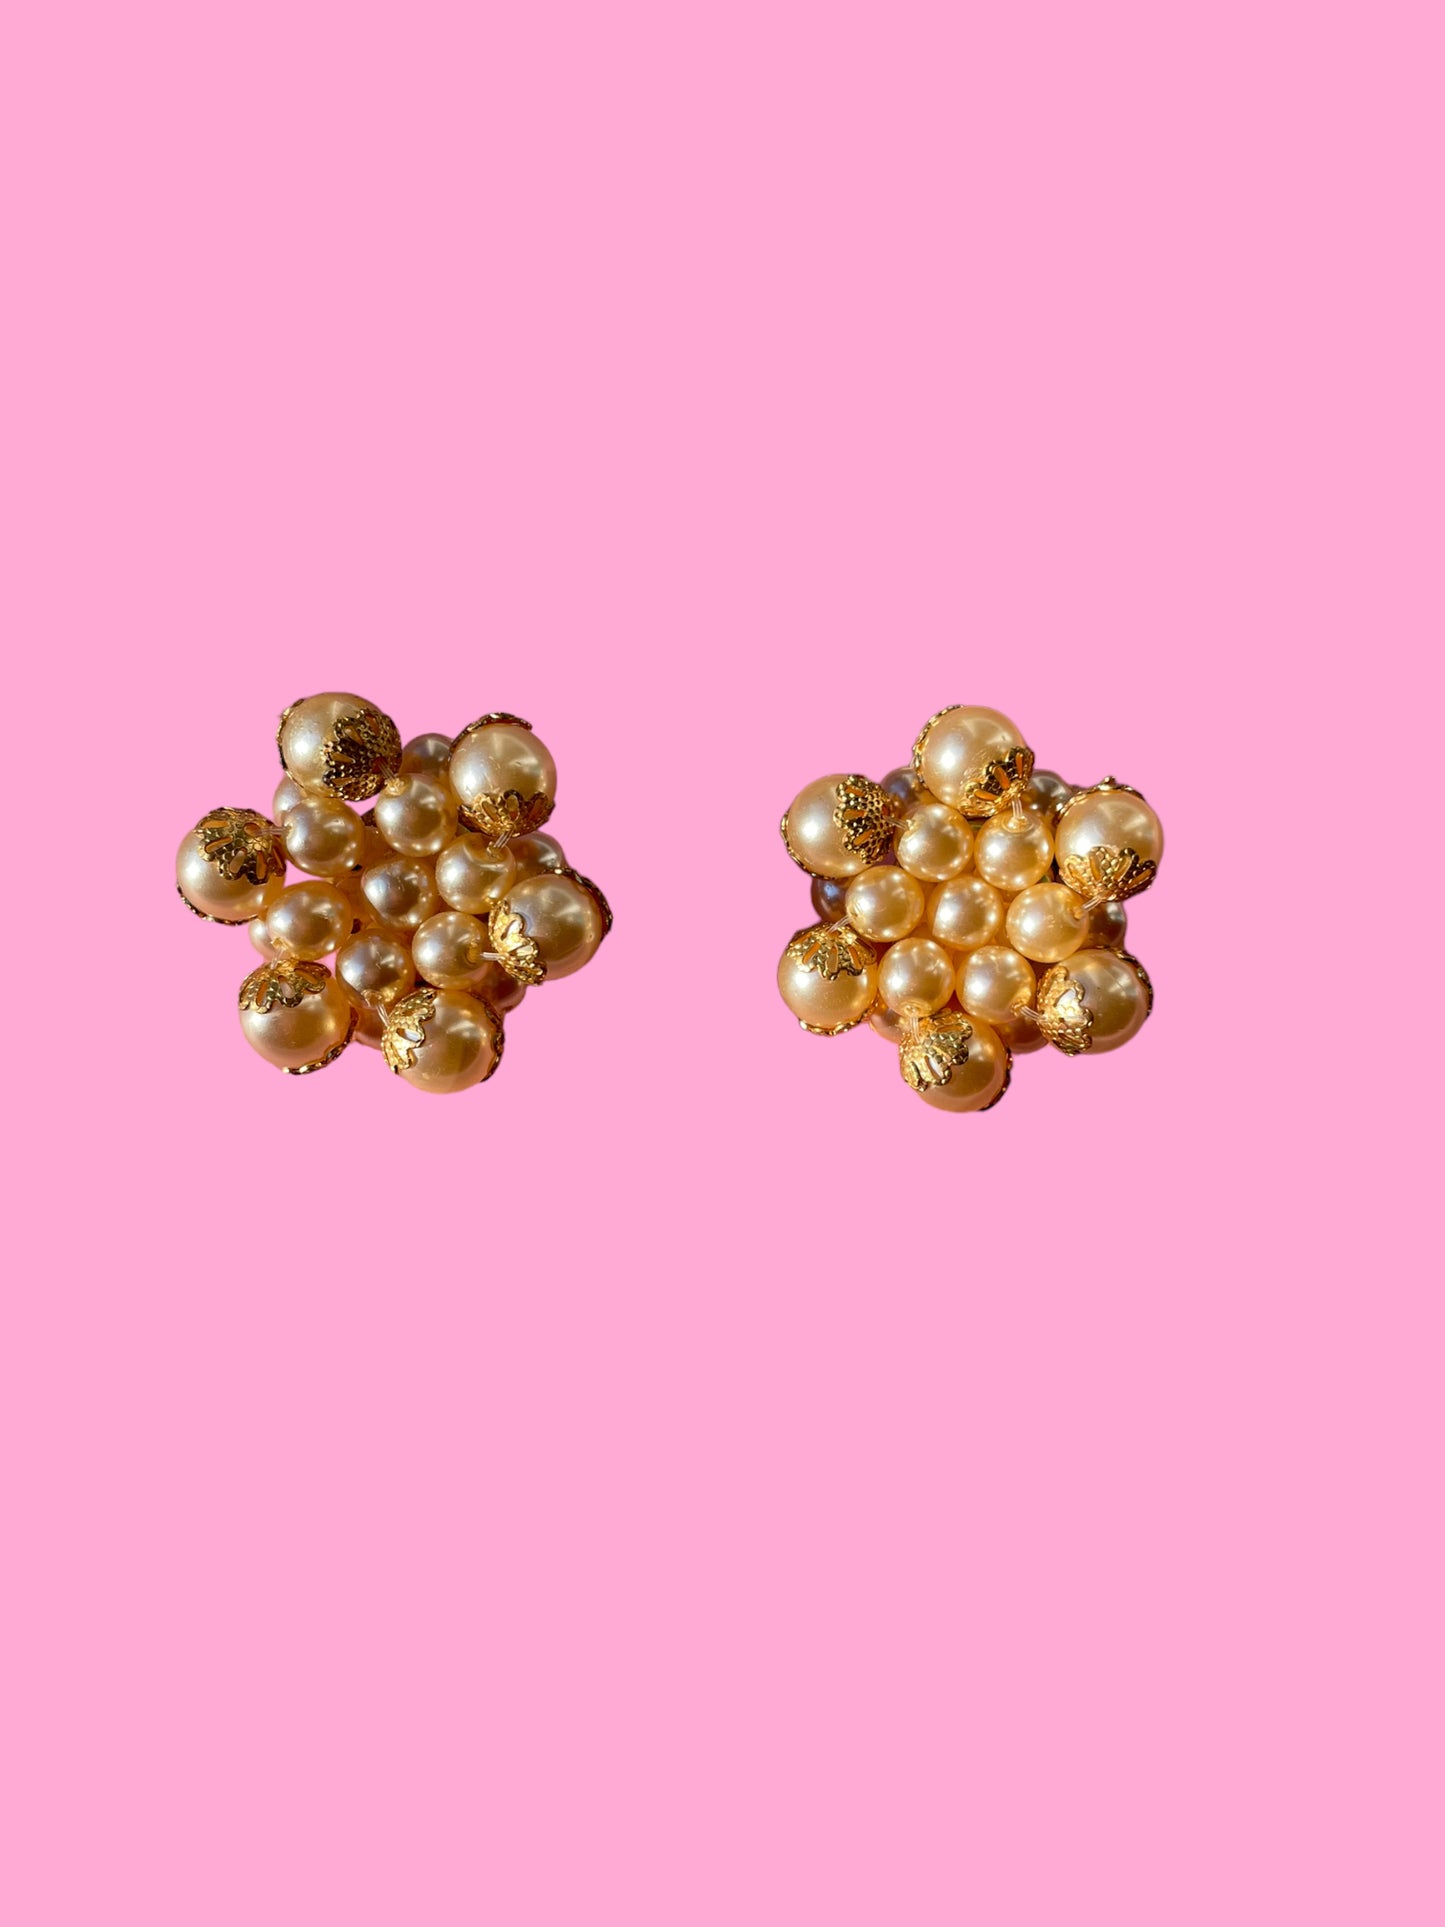 Vintage Pearl Cluster Earrings